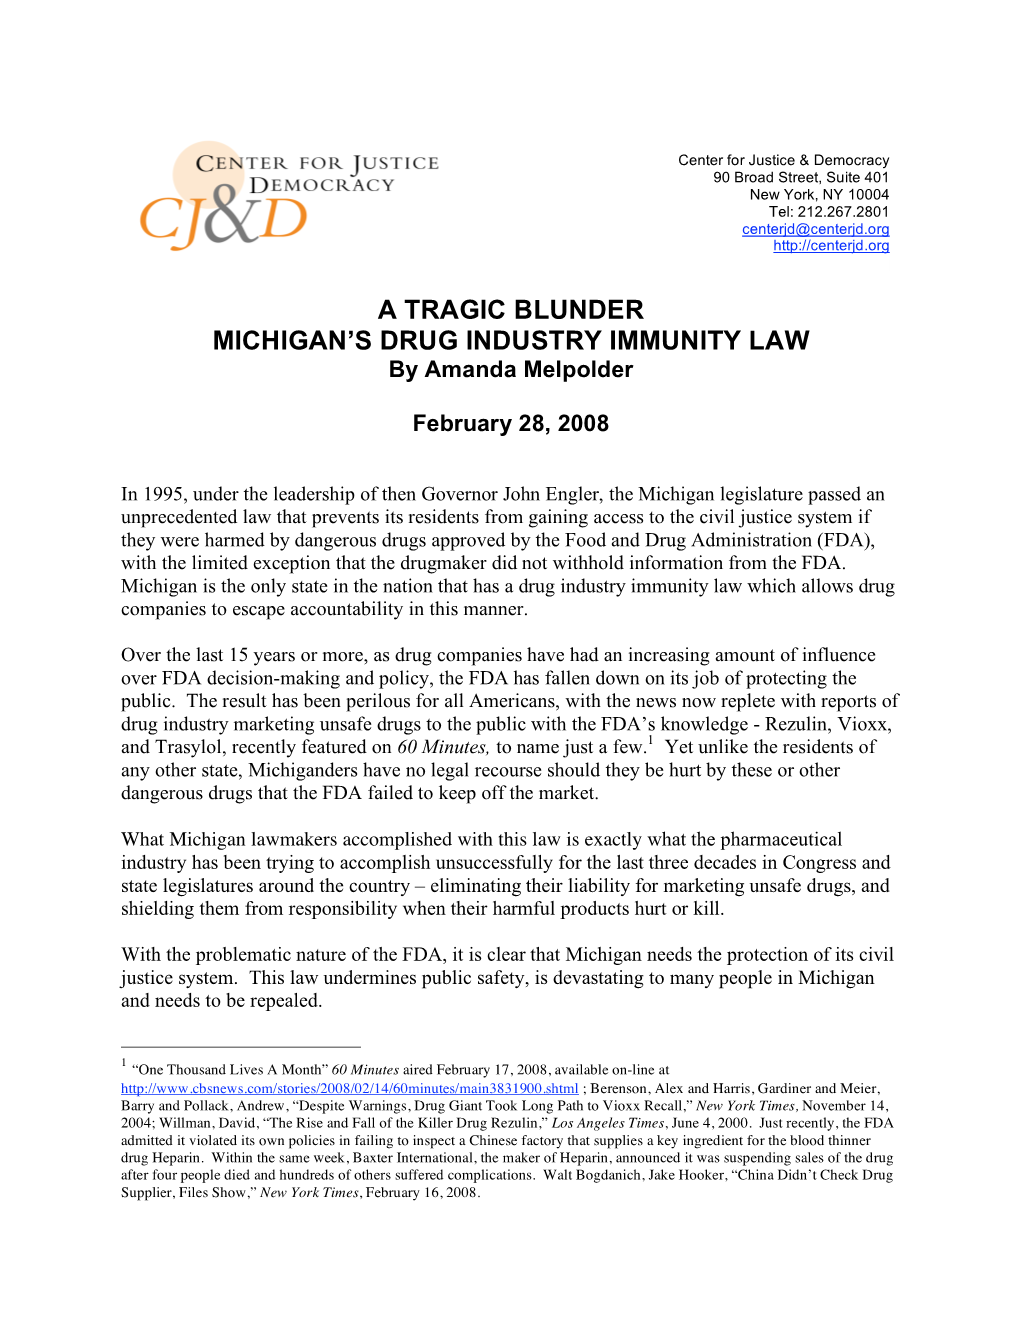 Study: a Tragic Blunder: Michigan's Drug Industry Immunity